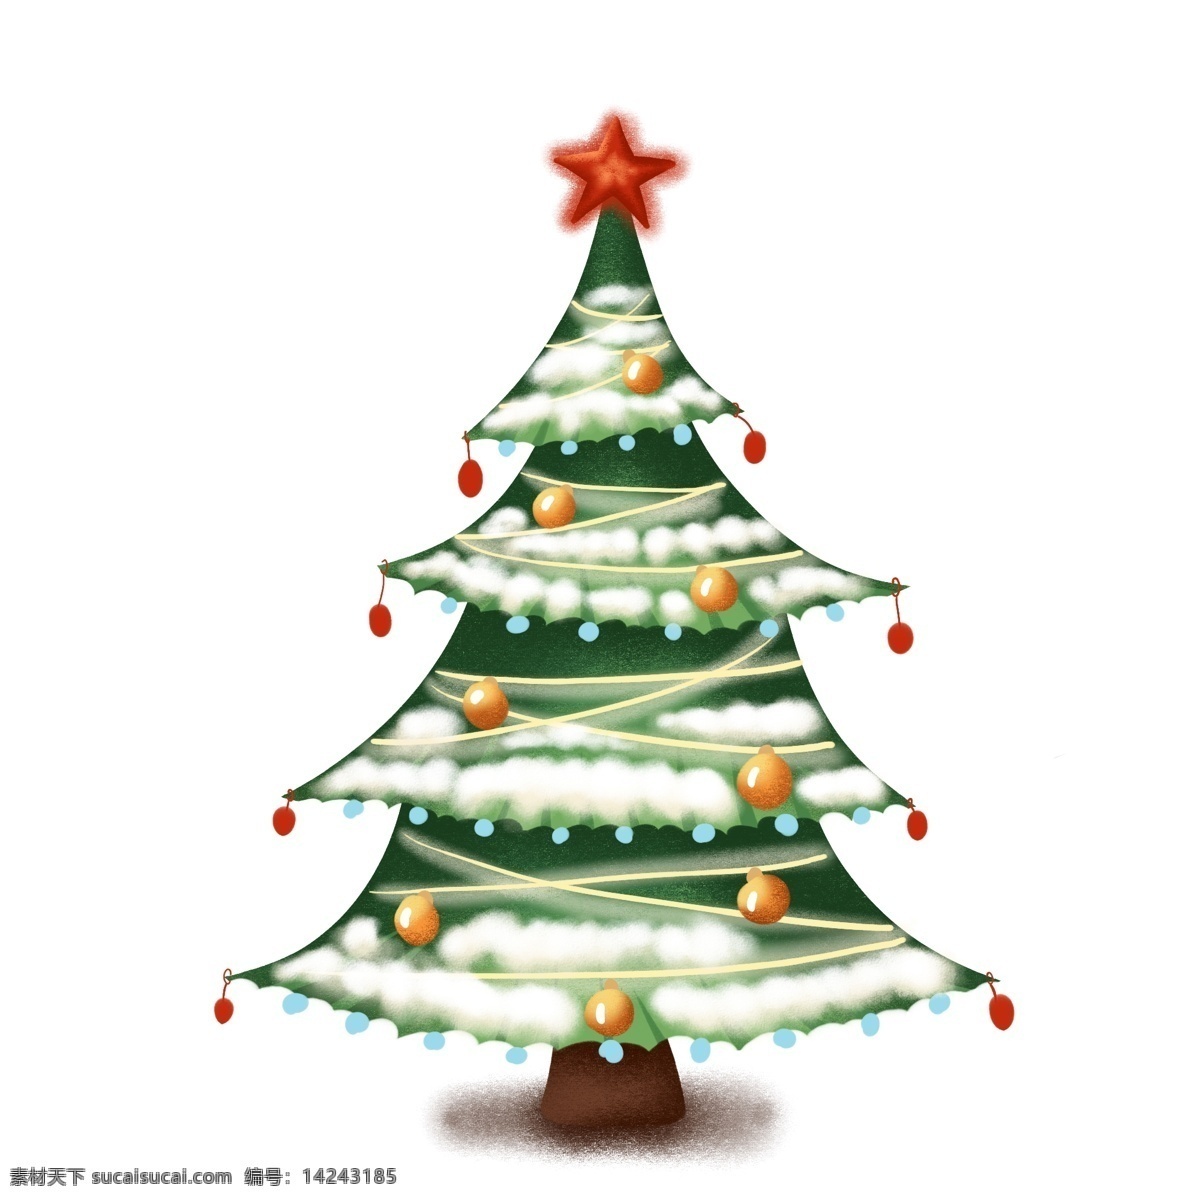 手绘 冬季 树木 圣诞树 插画 商用 分层 手绘冬季树木 卡通礼品树 原创 圣诞礼品 树 ps 设计素材 创意 元素 冬季礼品树木